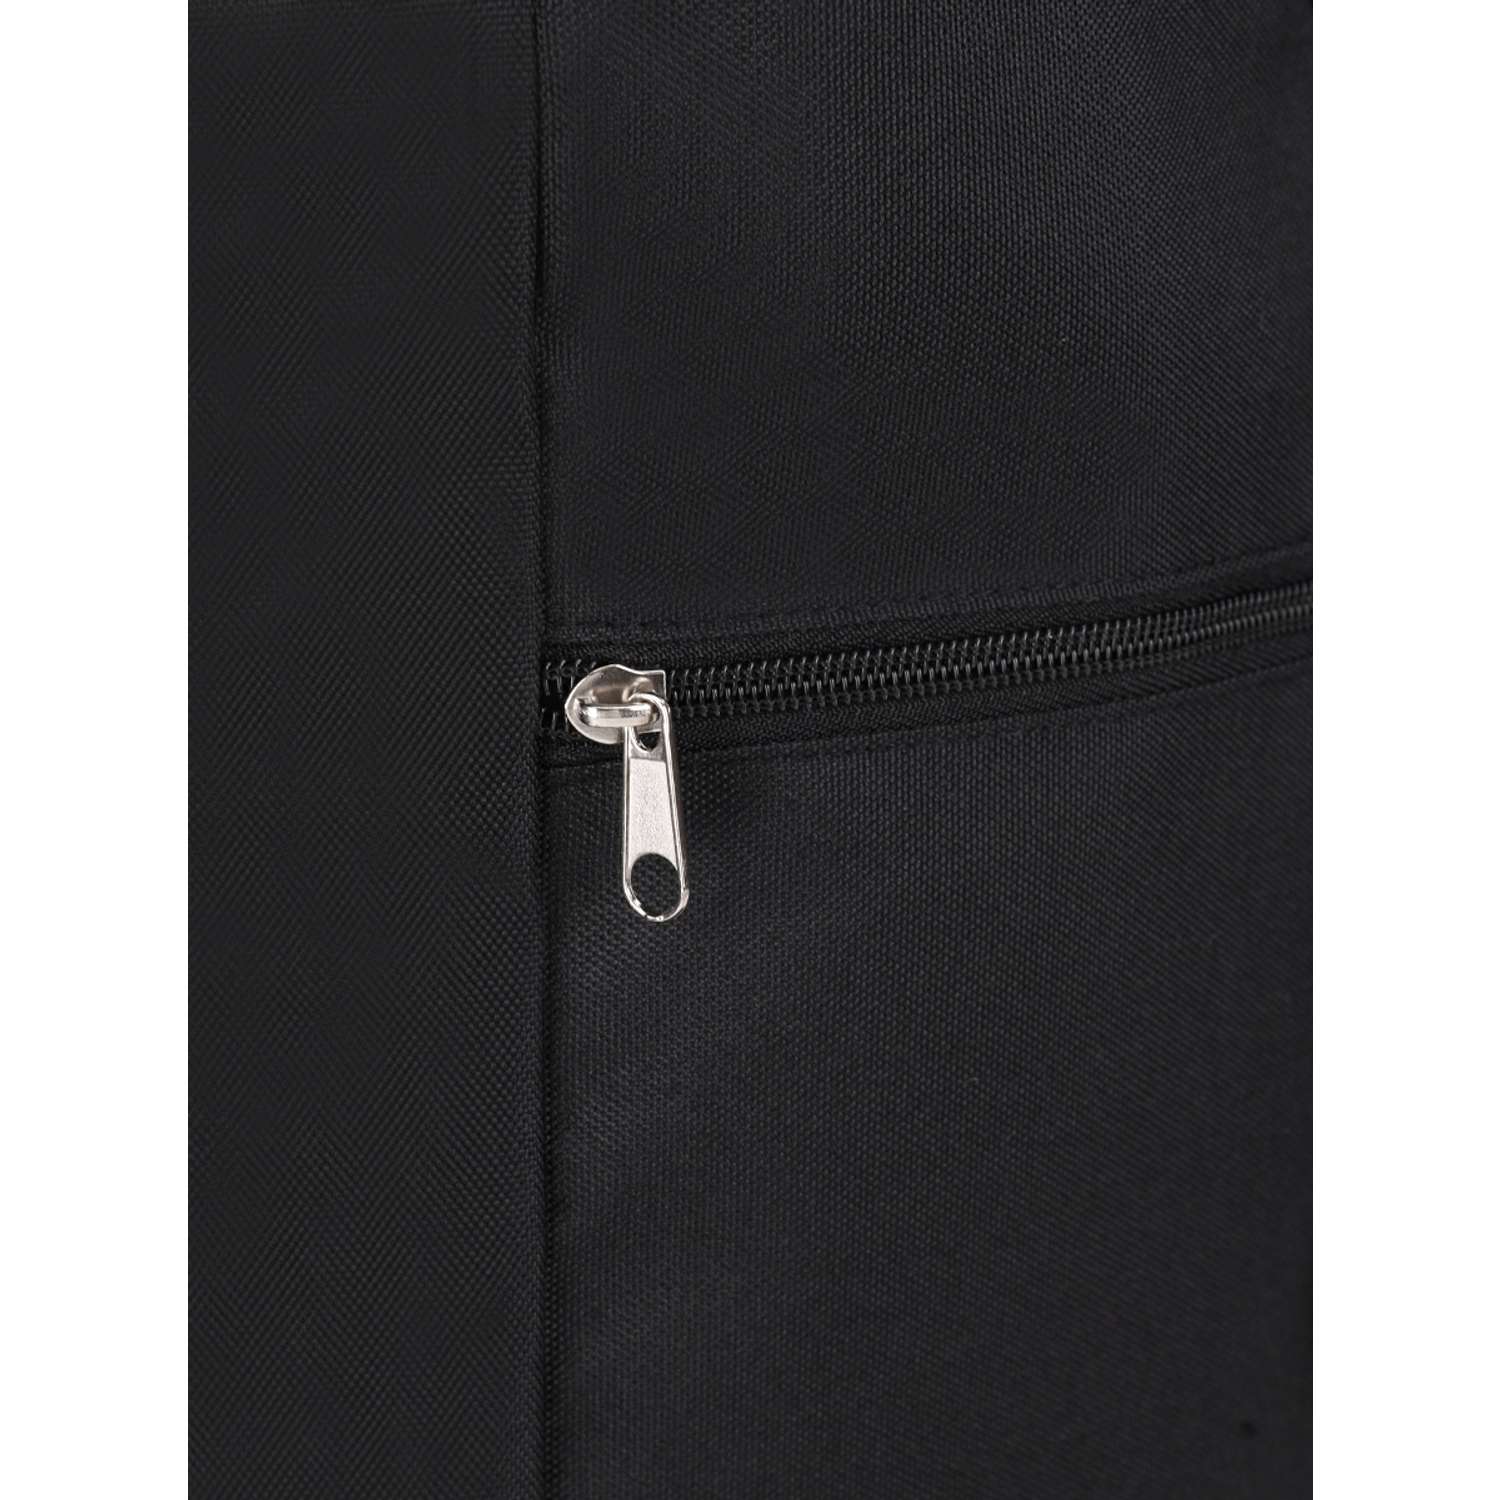 Рюкзак на шнурке Проф-Пресс Черный размер 27x46x15 см - фото 8